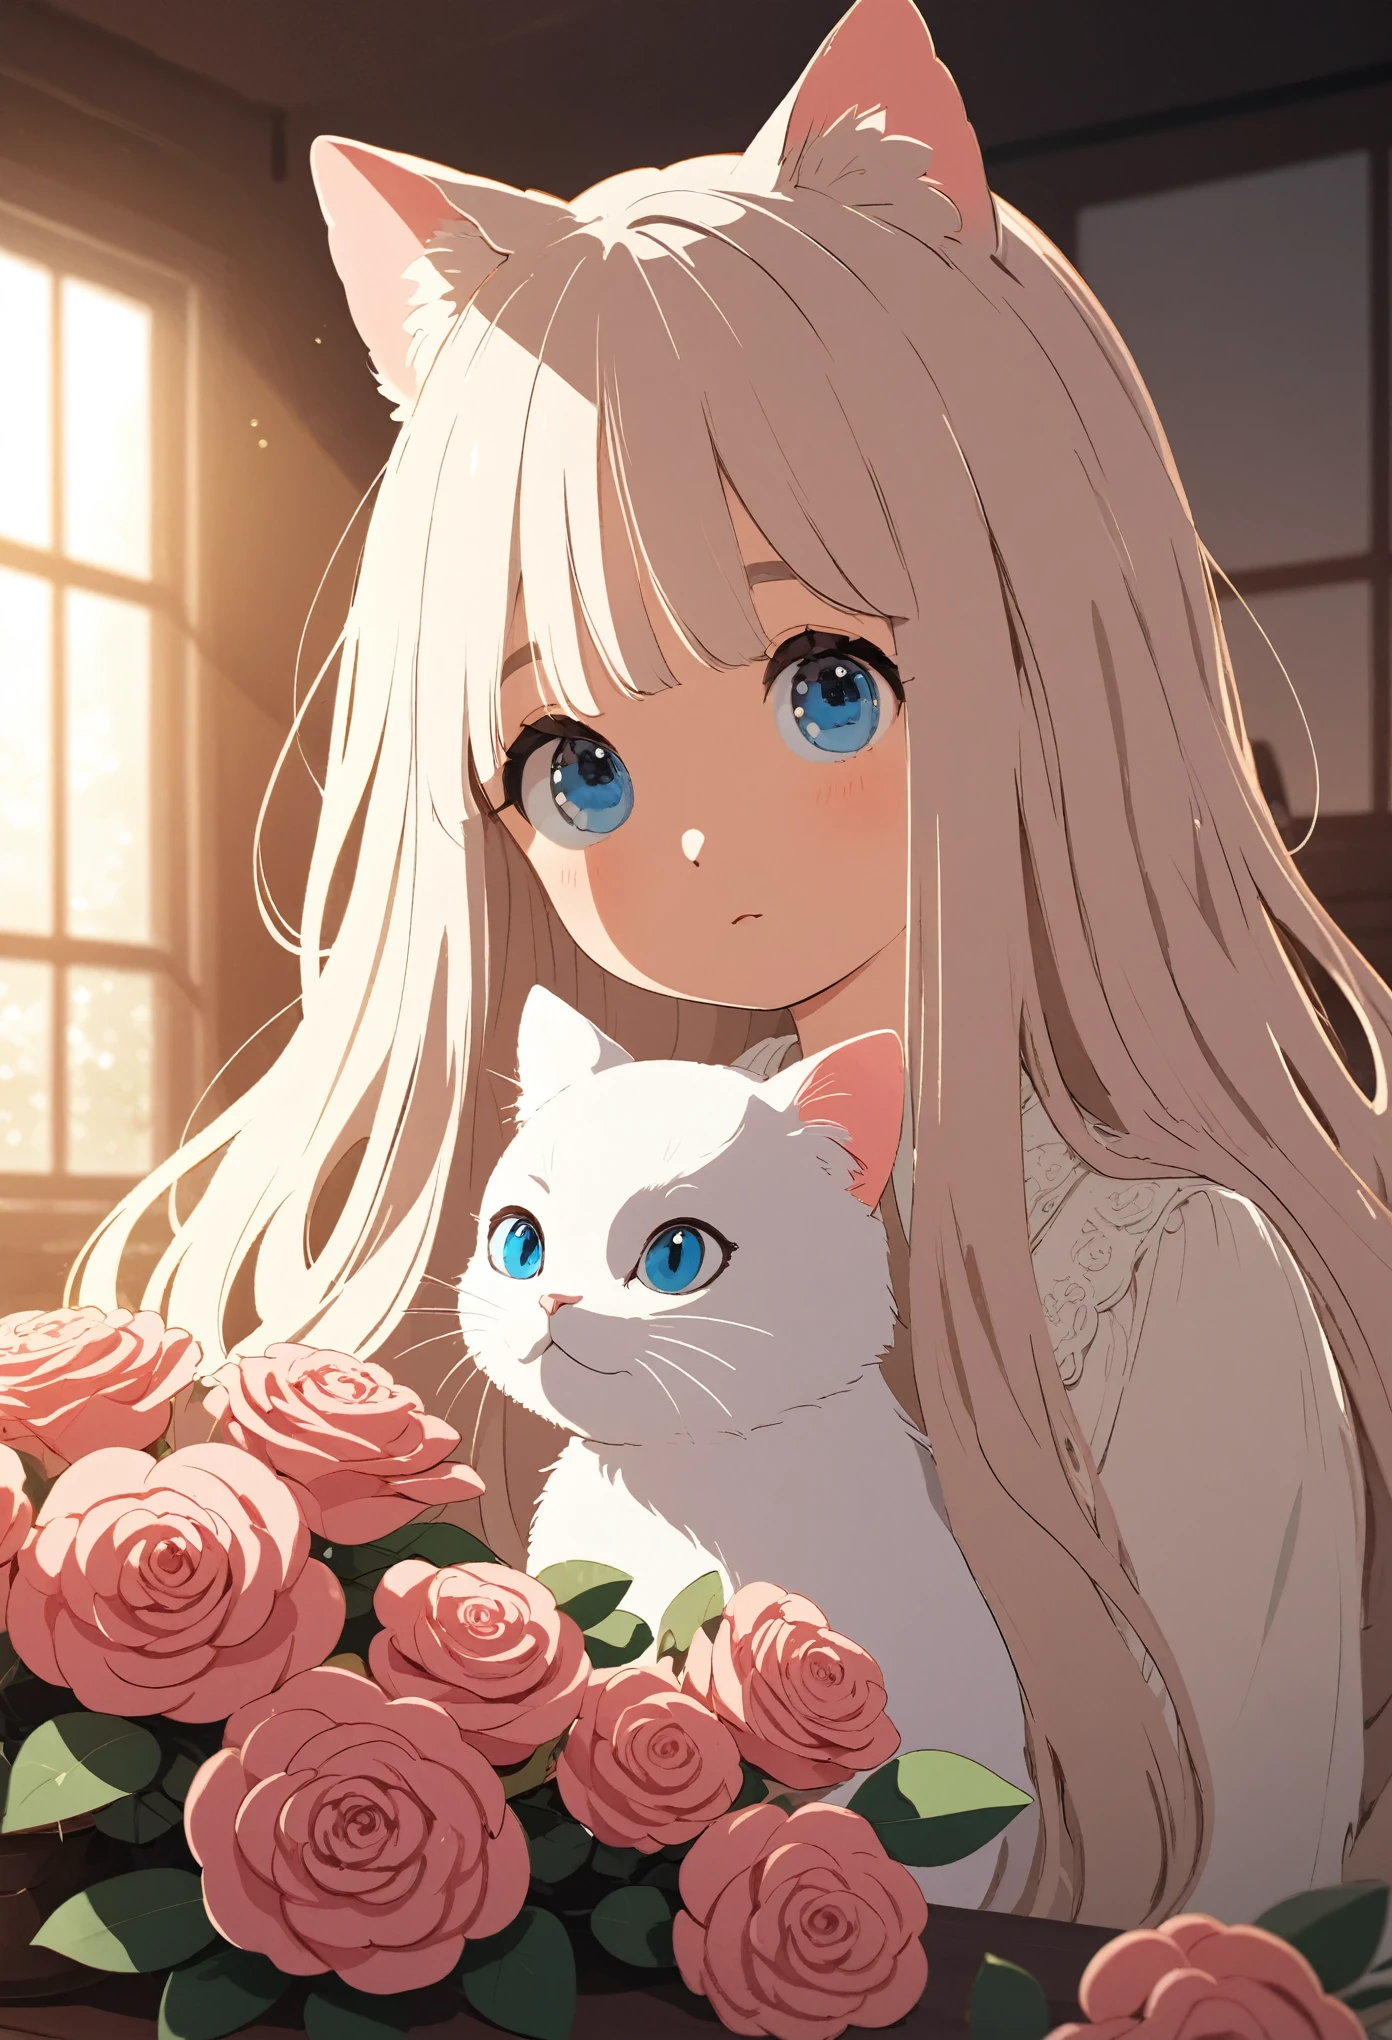 Um gato branco de cabelos compridos e olhos azuis, sentado em uma mesa ao lado de rosas em vasos, em uma vista frontal, close de todo o seu corpo, em luz natural, com cores quentes, em um ambiente interno, com iluminação suave, com detalhes claros, estilo de desenho animado, estilo de hayao miyazaki.